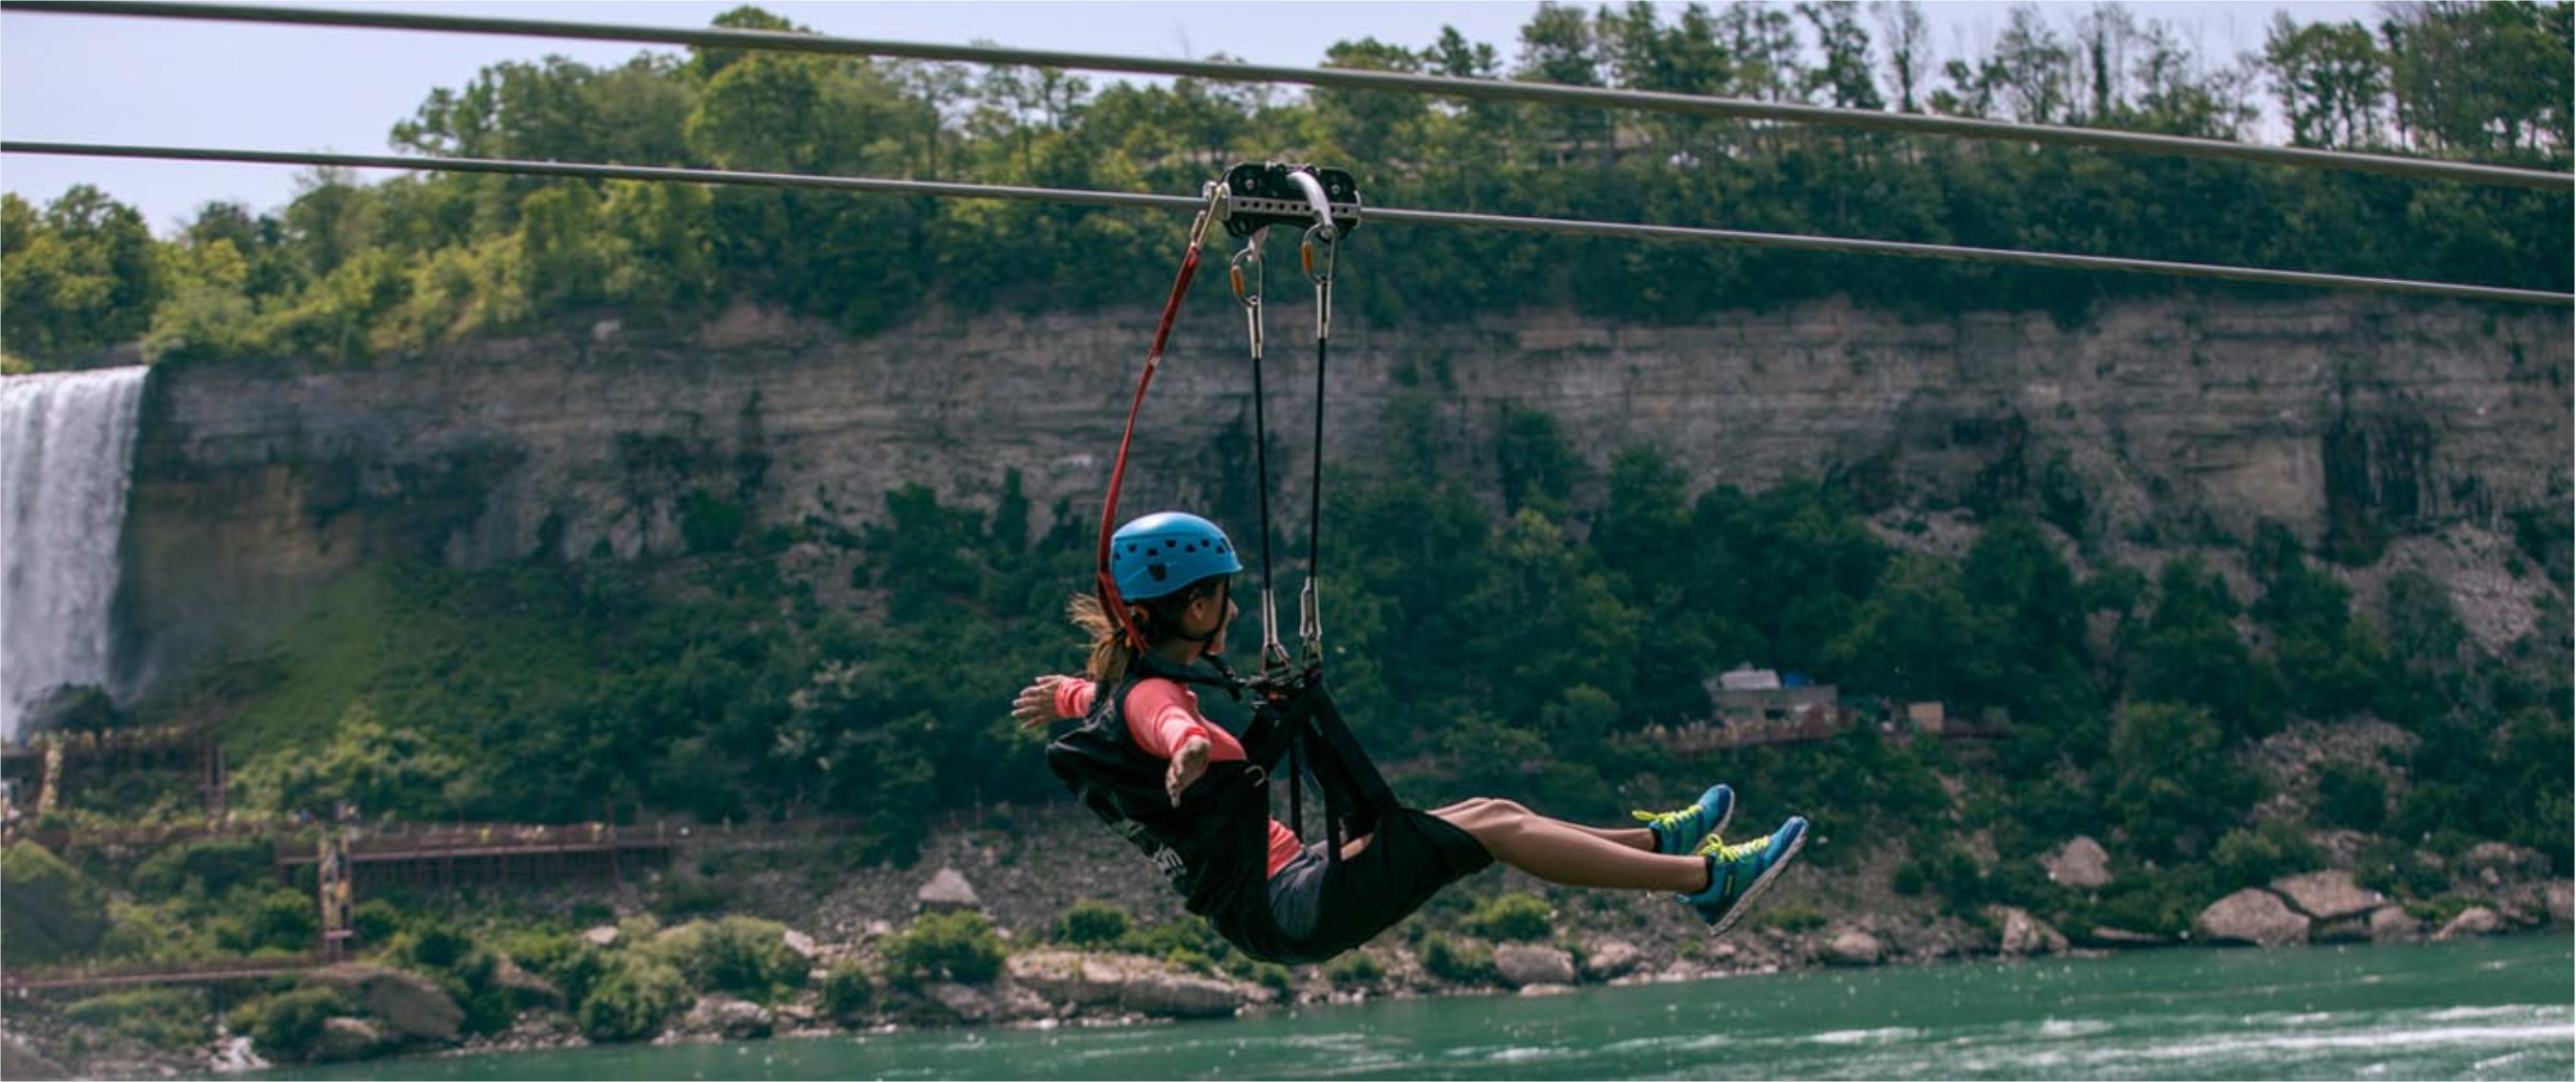 Yogi Bear’s Jellystone Camp in Niagara Falls - ziplining